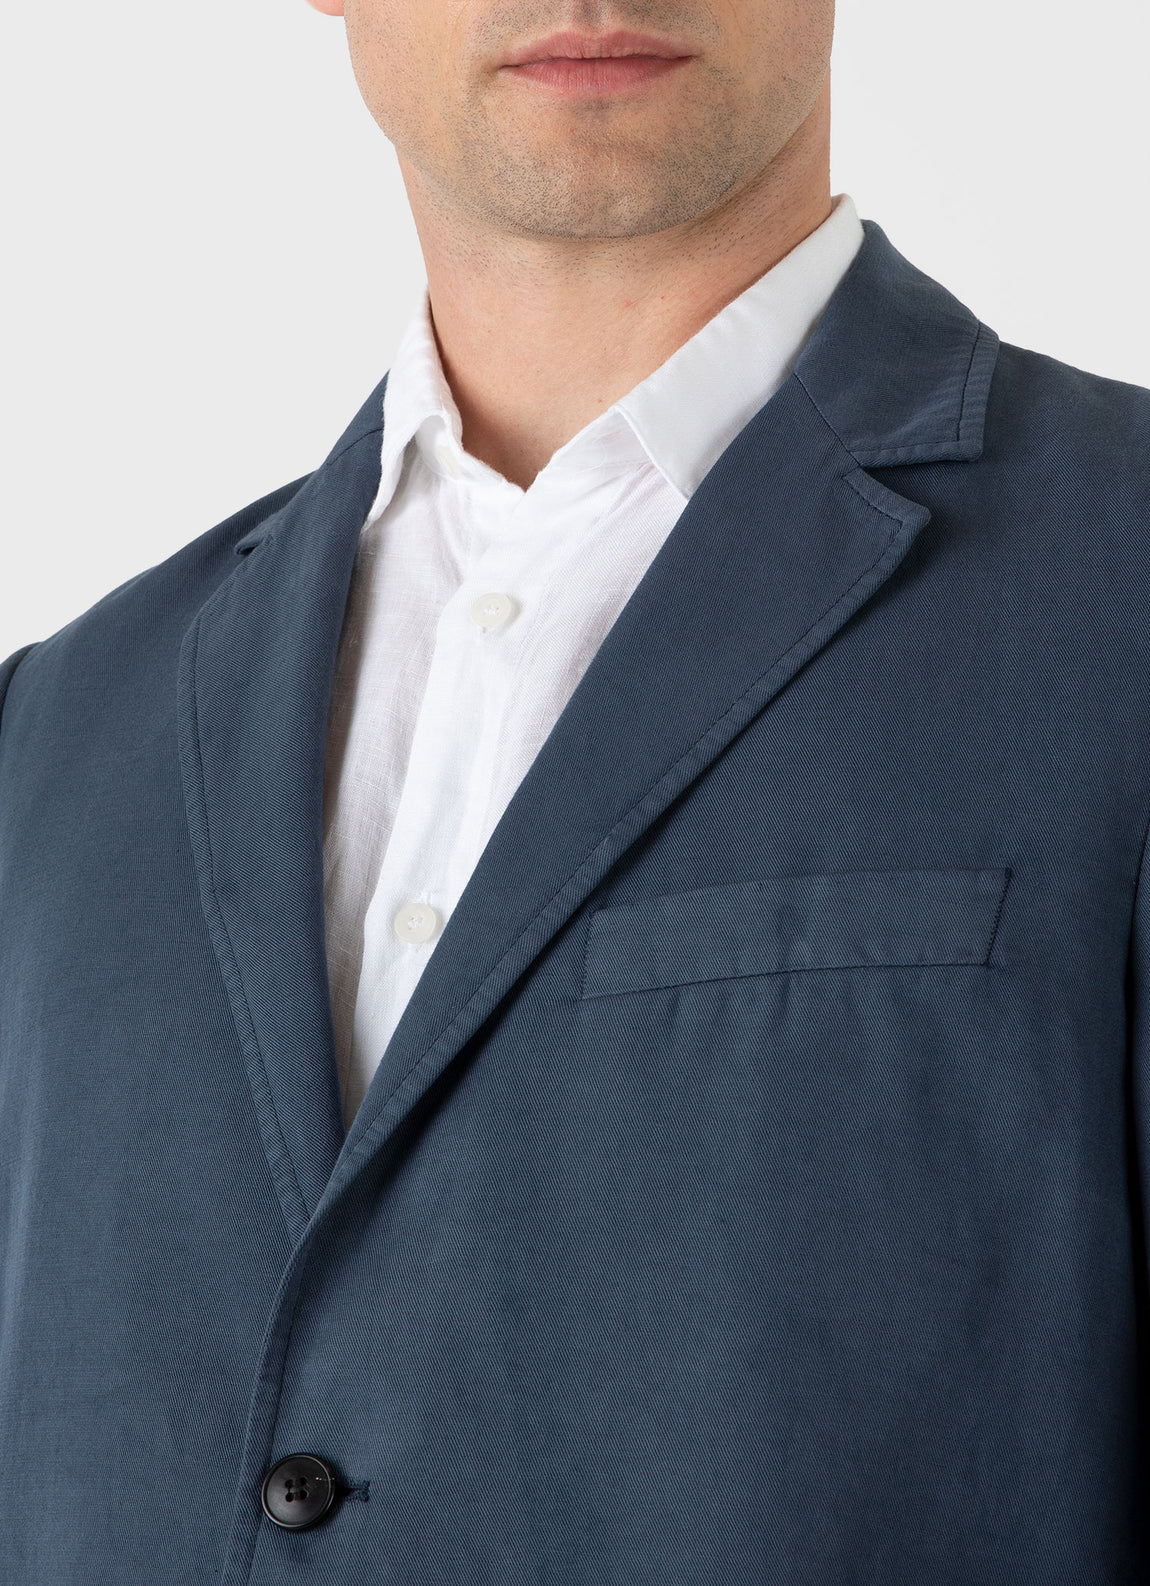 Men's Cotton Linen Two-Piece Suit in Shale Blue